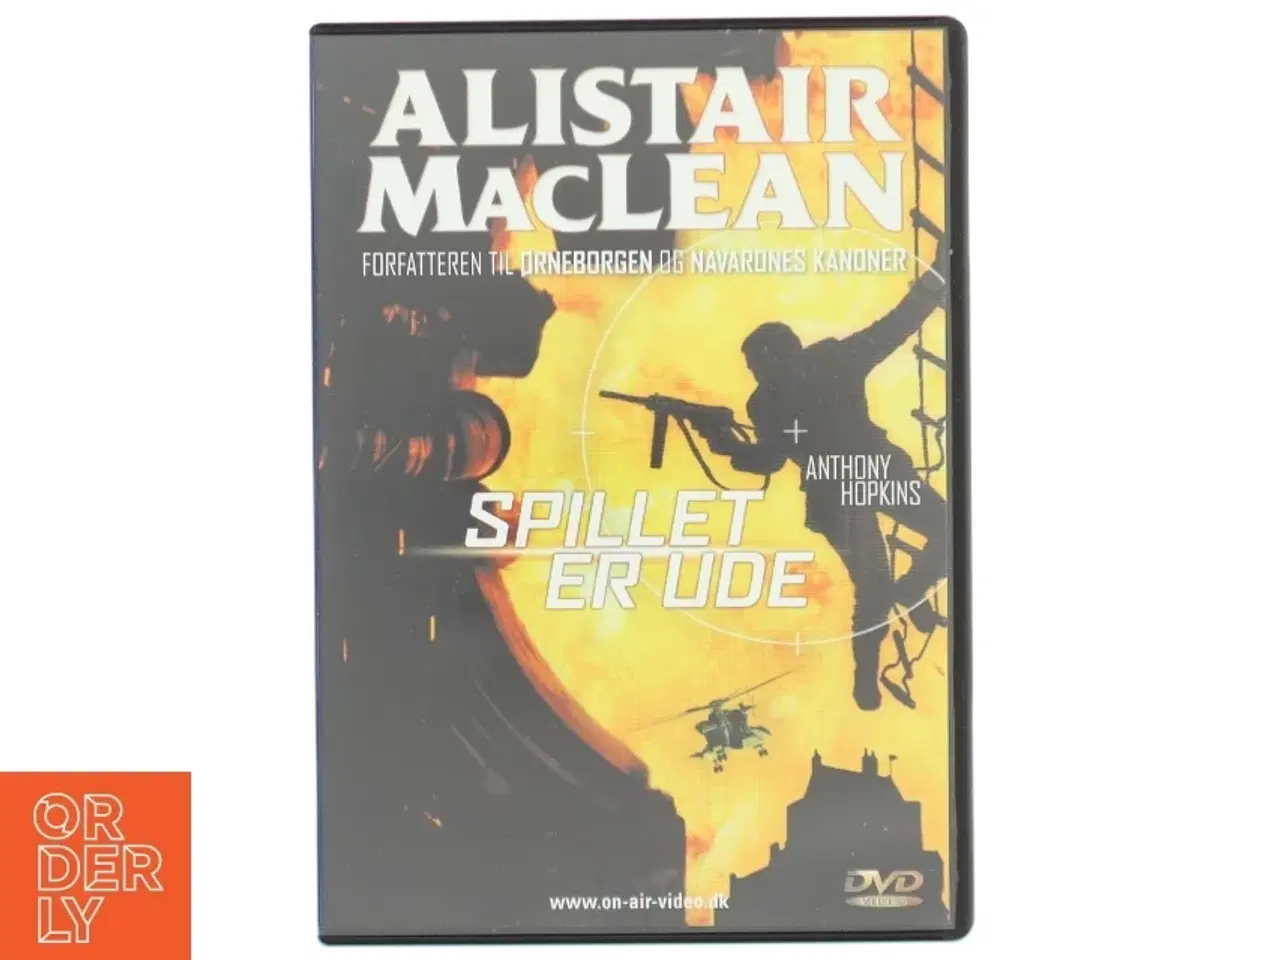 Billede 1 - Spillet er Ude - Alistair MacLean DVD fra On Air Video